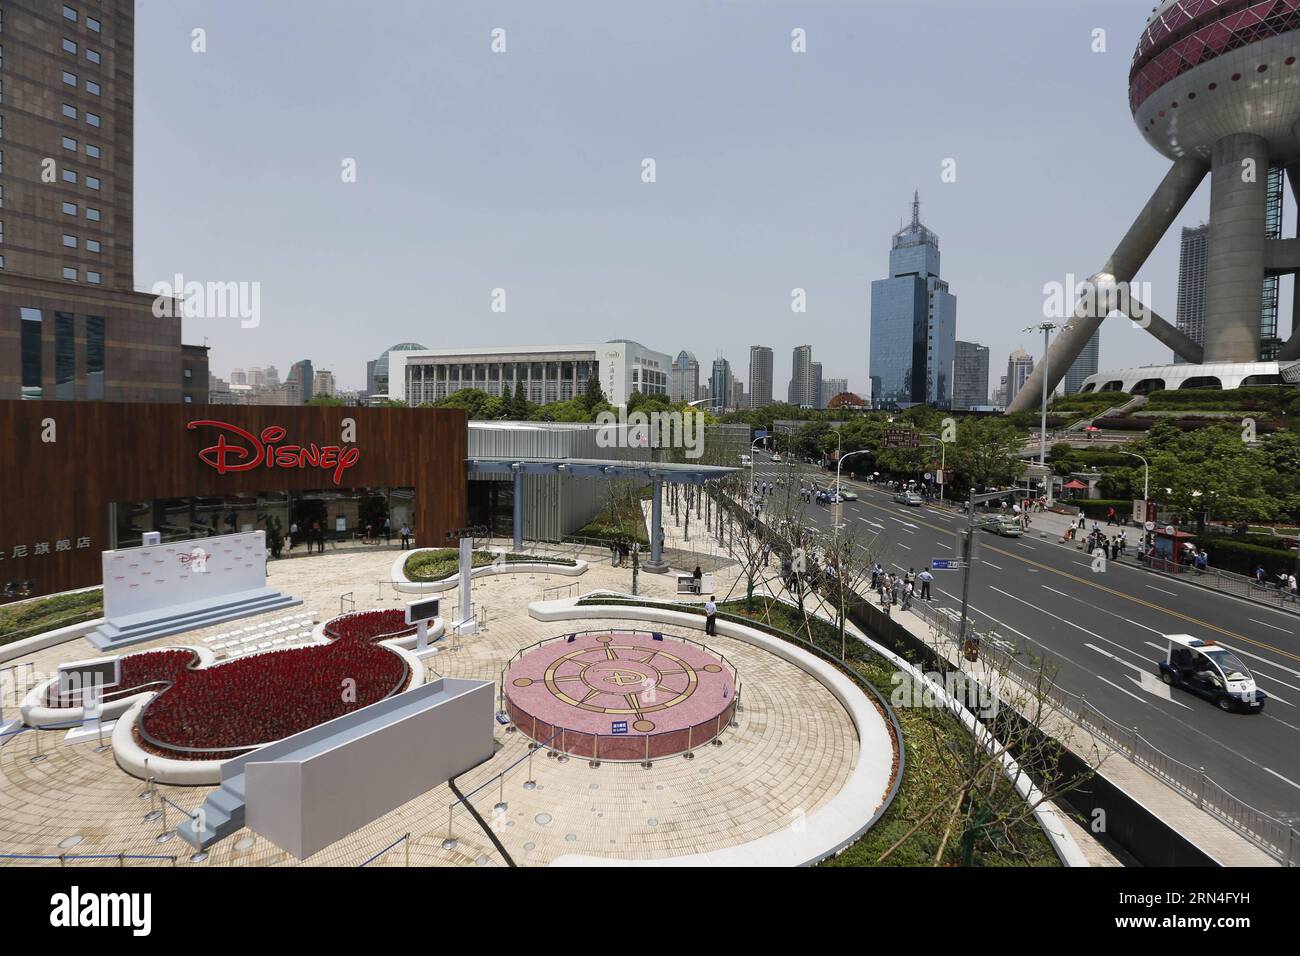 (150520) -- SHANGHAI, 20. Mai 2015 -- Foto aufgenommen am 20. Mai 2015 zeigt das Äußere des Disney Flagship Stores in Shanghai, Ostchina. Das Geschäft, das eine Fläche von 5.860 Quadratmetern im Geschäftsviertel Lujiazui einnimmt, wurde am Mittwoch eröffnet. ) (wyo) CHINA-SHANGHAI-DISNEY STORE-OPENING (CN) DingxTing PUBLICATIONxNOTxINxCHN 150520 Shanghai 20. Mai 2015 Foto aufgenommen AM 20. Mai 2015 zeigt die Außenseite des Disney Flagship Store in Shanghai Ostchina der Store nimmt eine Fläche von 5 860 QUADRATMETERN im Lujiazui Business District ein, was AM Mittwoch wyo China eröffnet wurde Shanghai Disney Sto Stockfoto